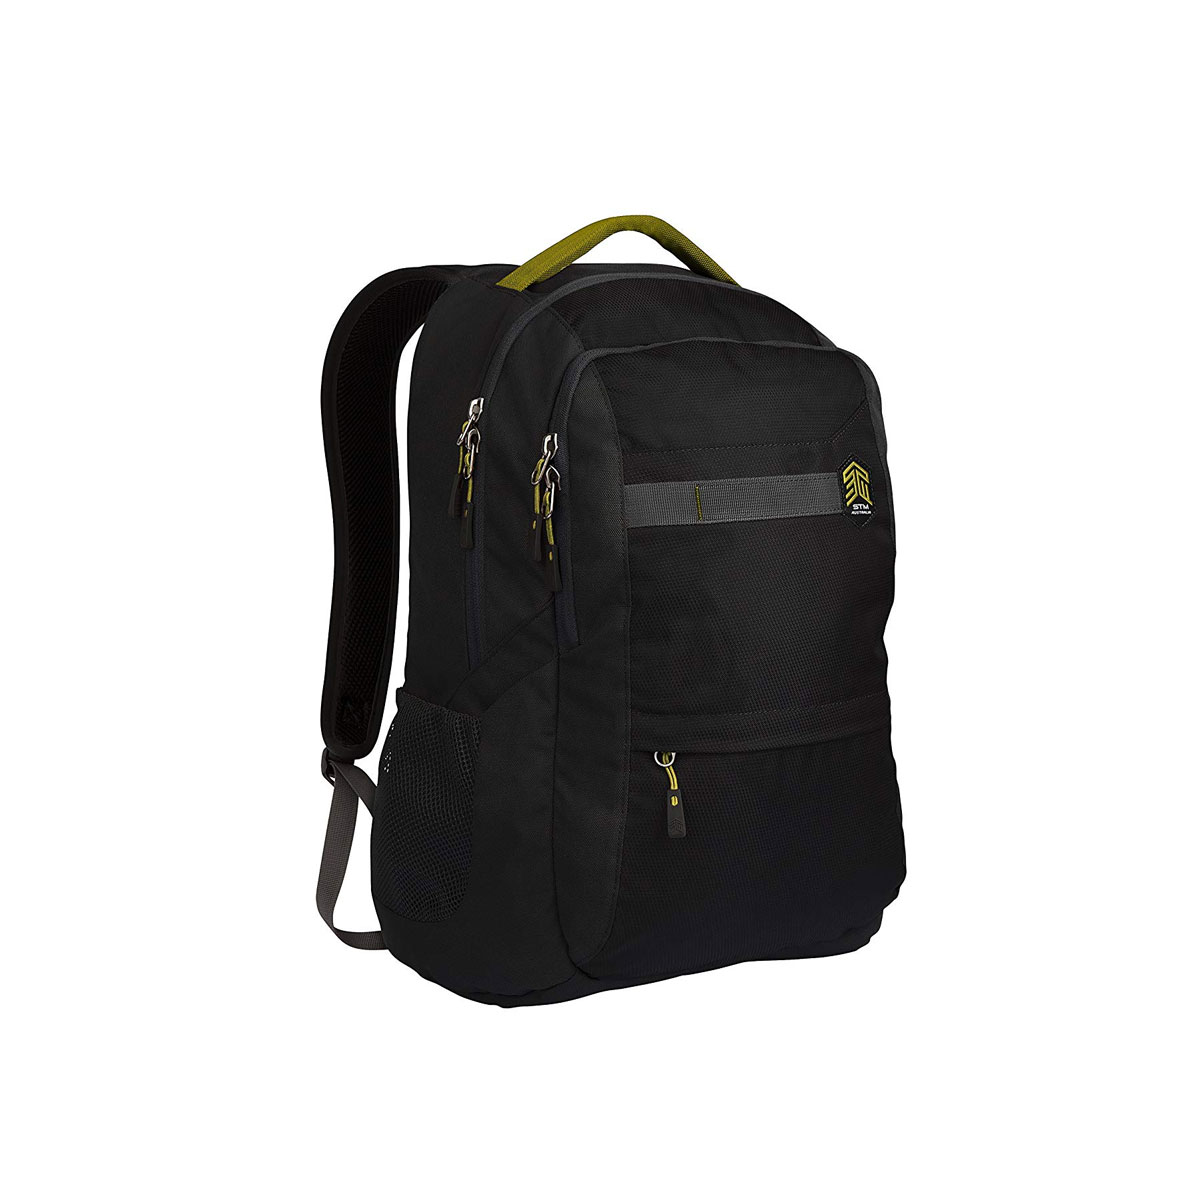 STM - Trilogy 15" Backpack - Black